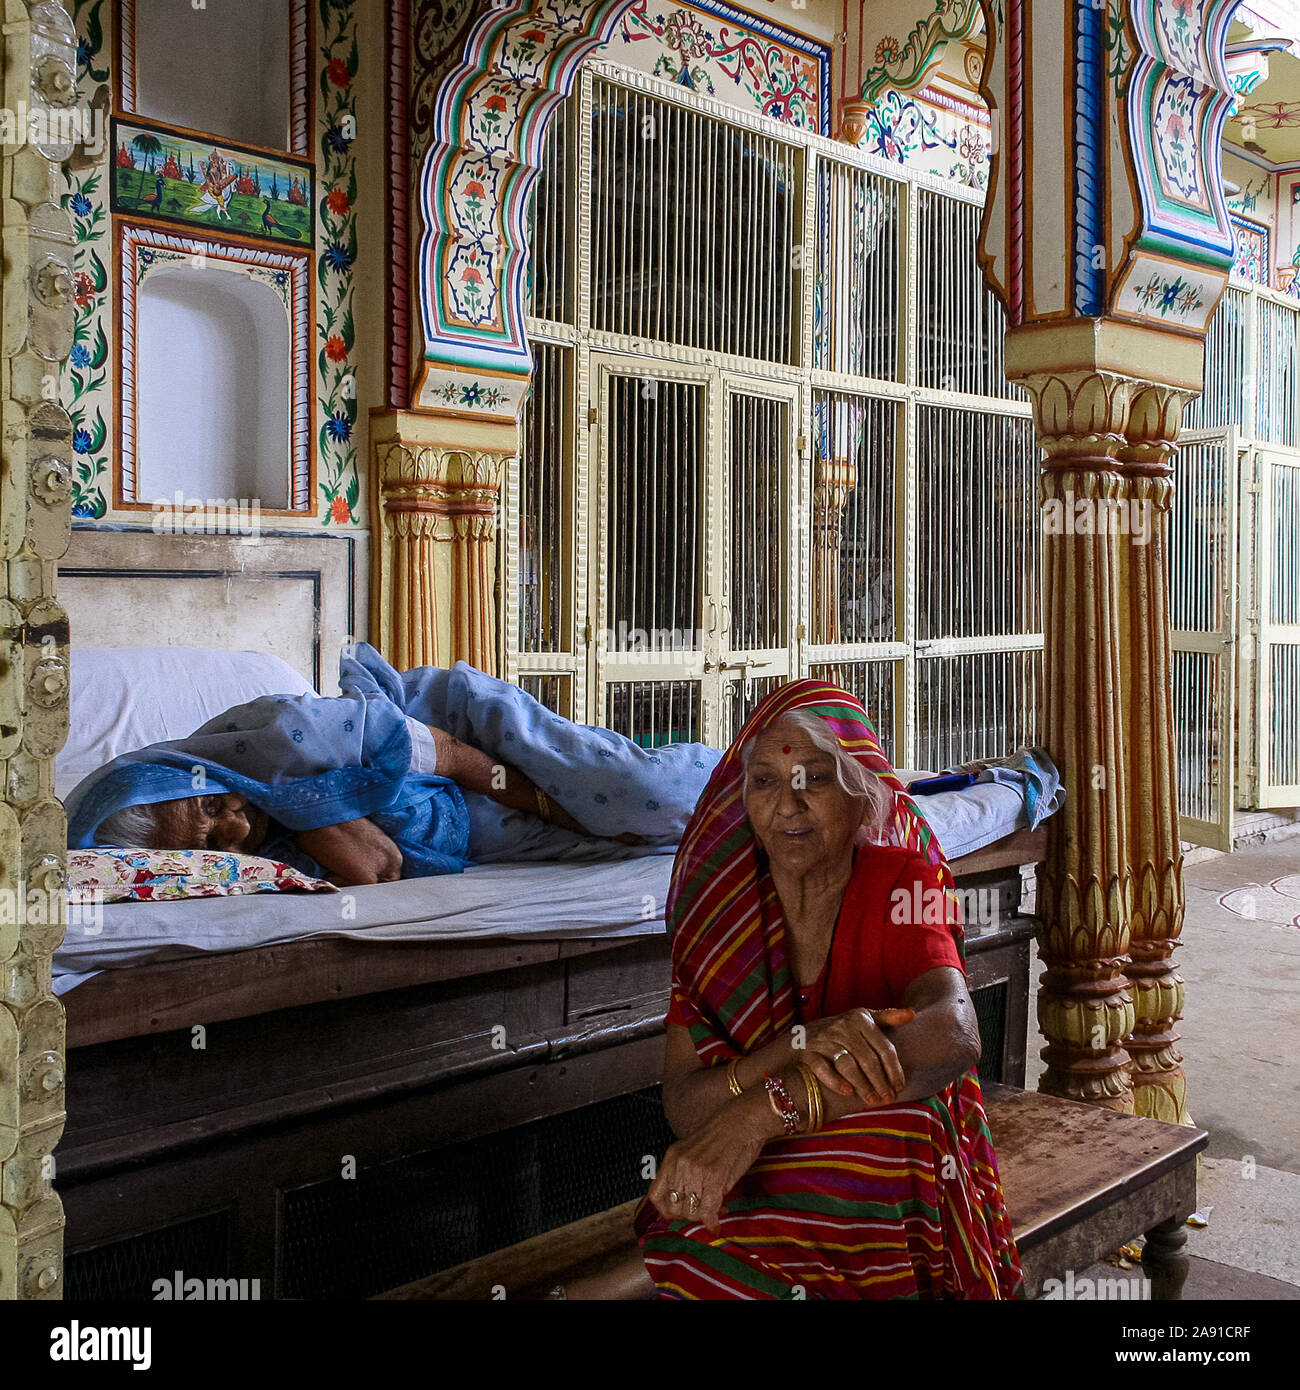 Pushkar, Rajasthan, Indien: Eine ältere Indianerin schläft auf dem Bett, während eine andere Frau neben ihr sitzt. Stockfoto